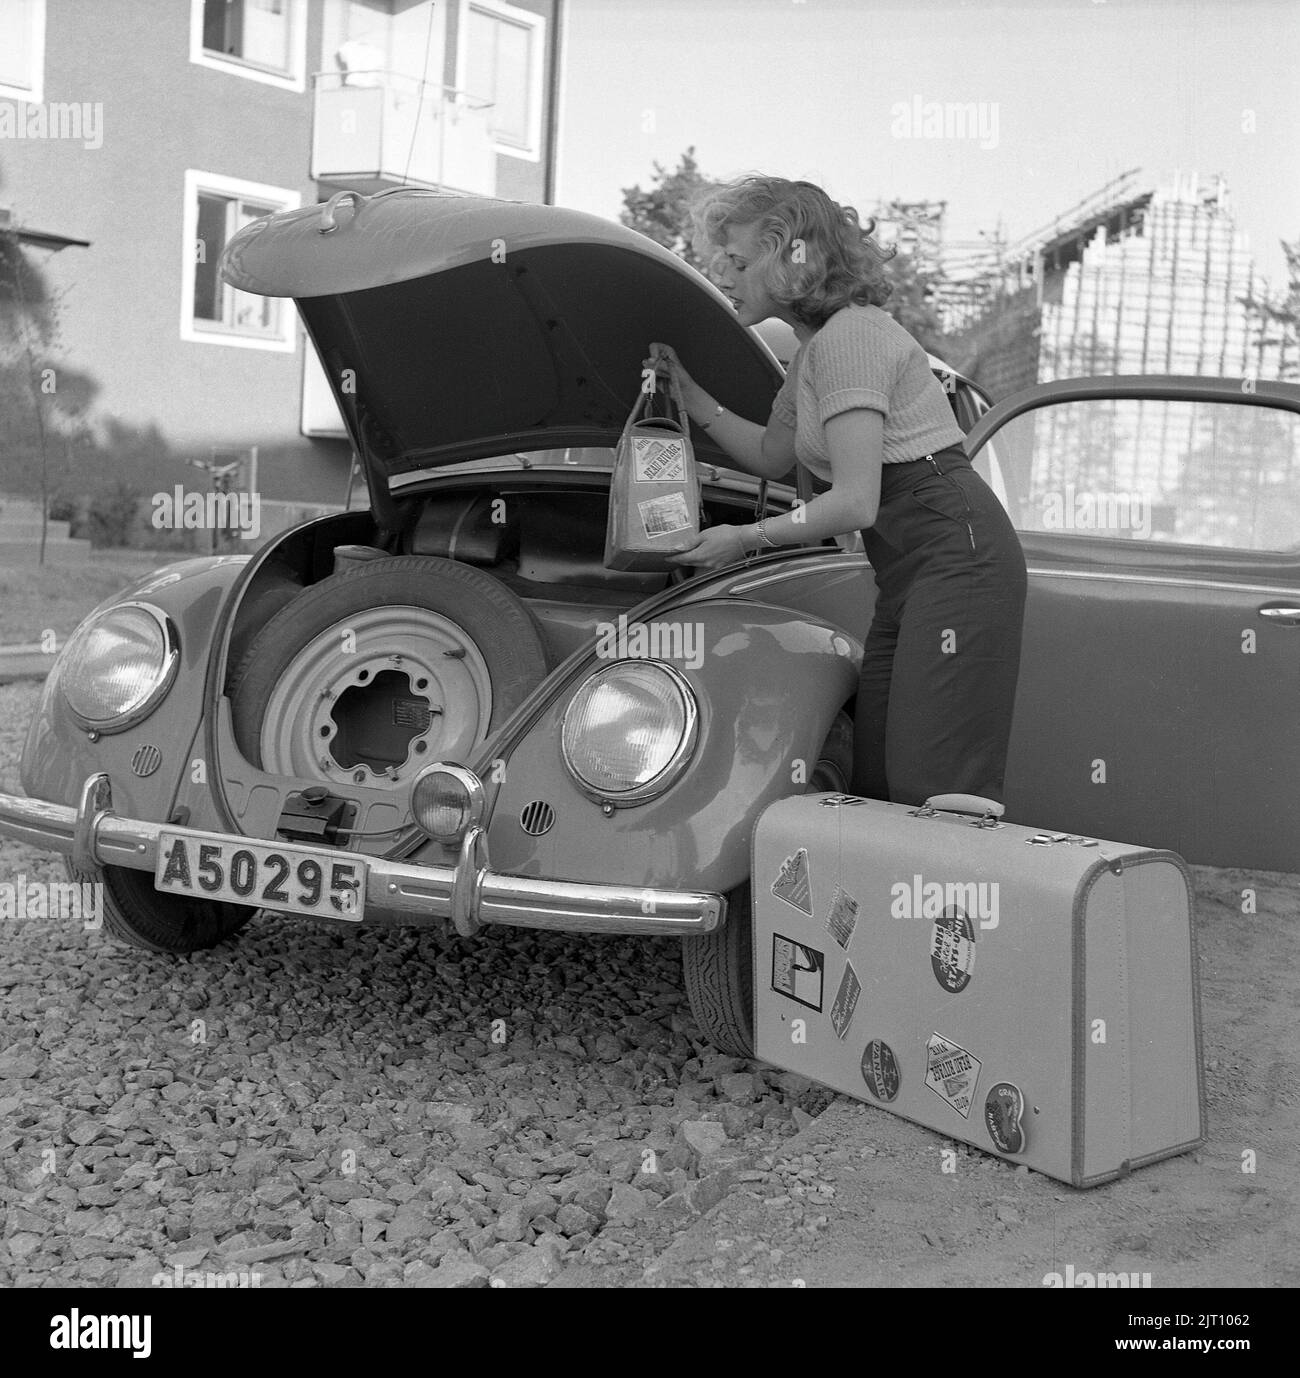 Fahren im 1950s. Sängerin Bibi Johns geht auf Roadtrip und packt ihr Gepäck im Kofferraum ihres VW-Autos. Beachten Sie, dass das Auto seinen Motor im hinteren Teil des Autos und den Platz für Gepäck und Reserverad in der Front hat. Schweden 1951 Conard 1724 Stockfoto